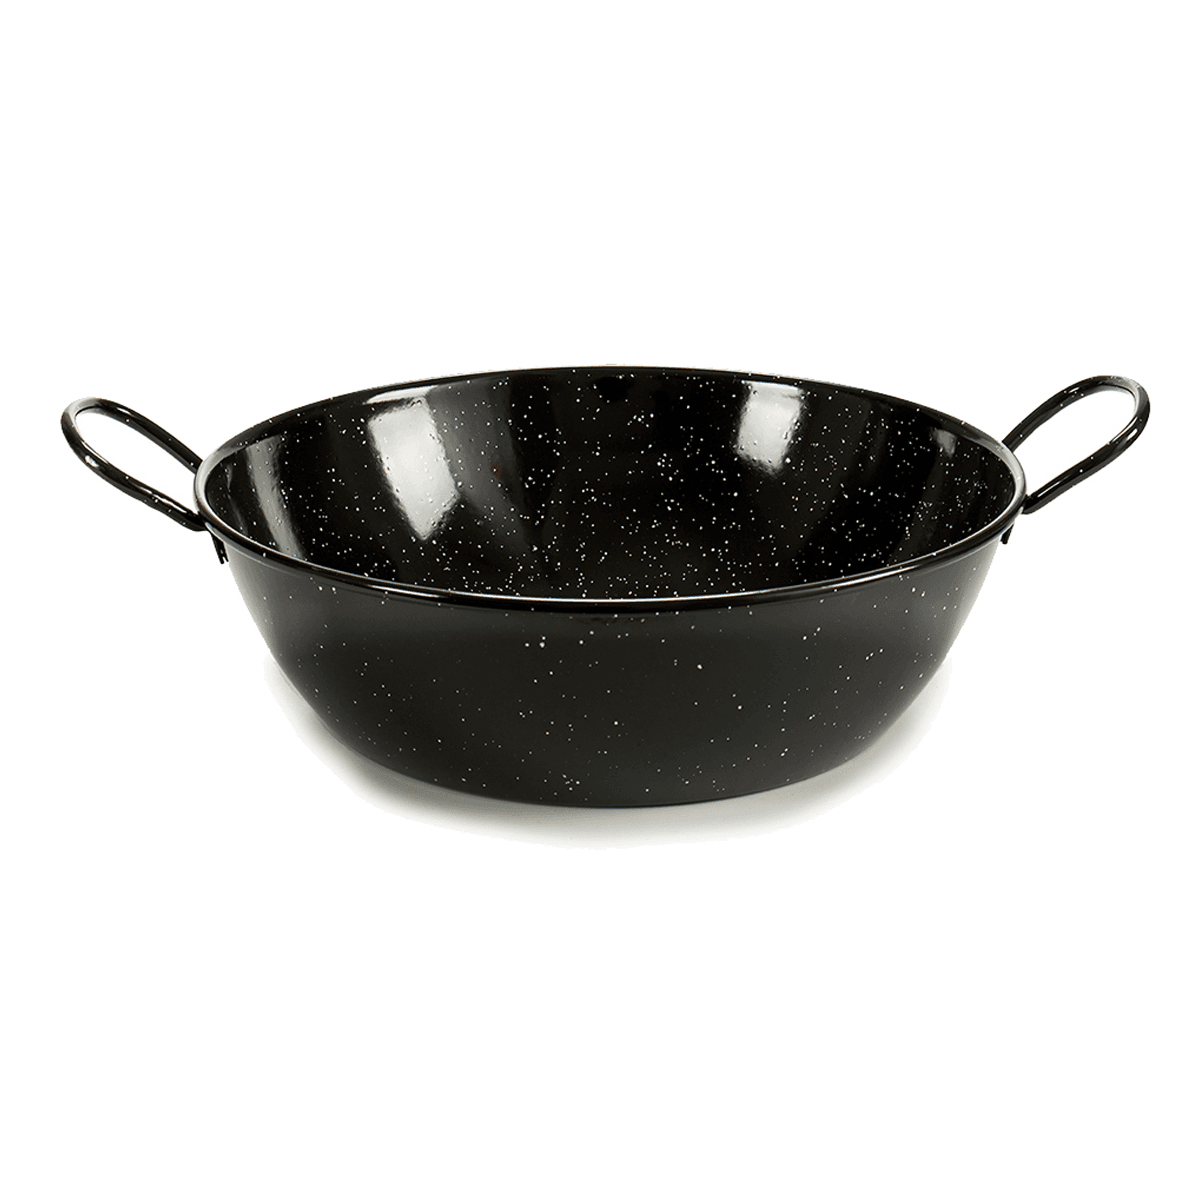 La Dehesa Black Deep Enameled Steel Frying Pan 45 cm